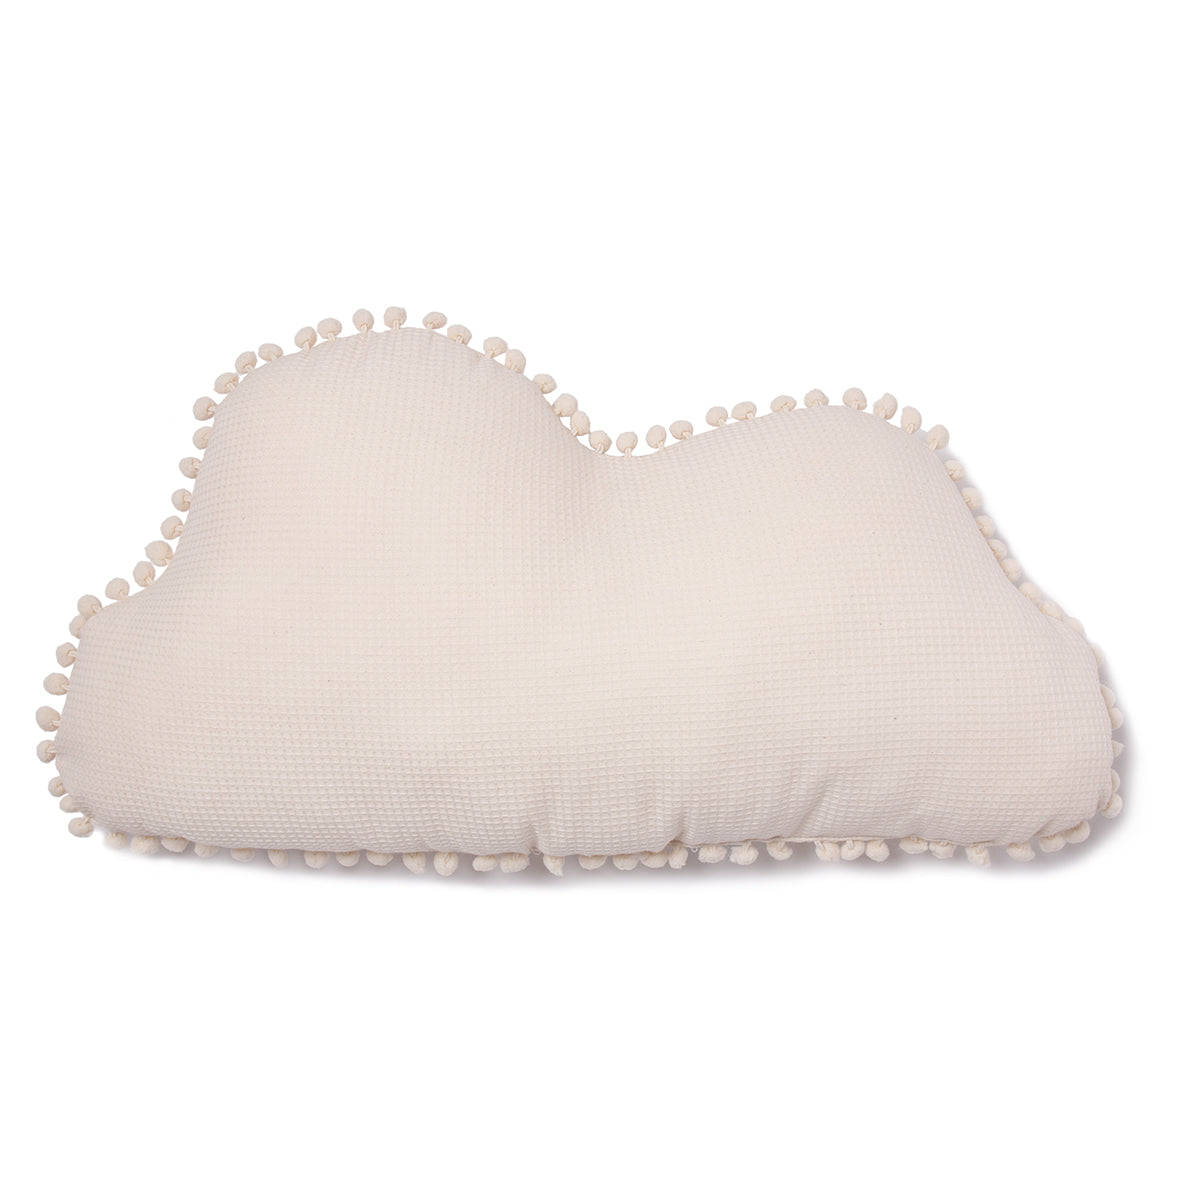 Dit heerlijk zachte Marshmallow kussen van Nobodinoz lijkt op een echte wolk en is speciaal ontworpen om de zintuigen van kinderen te stimuleren. VanZus